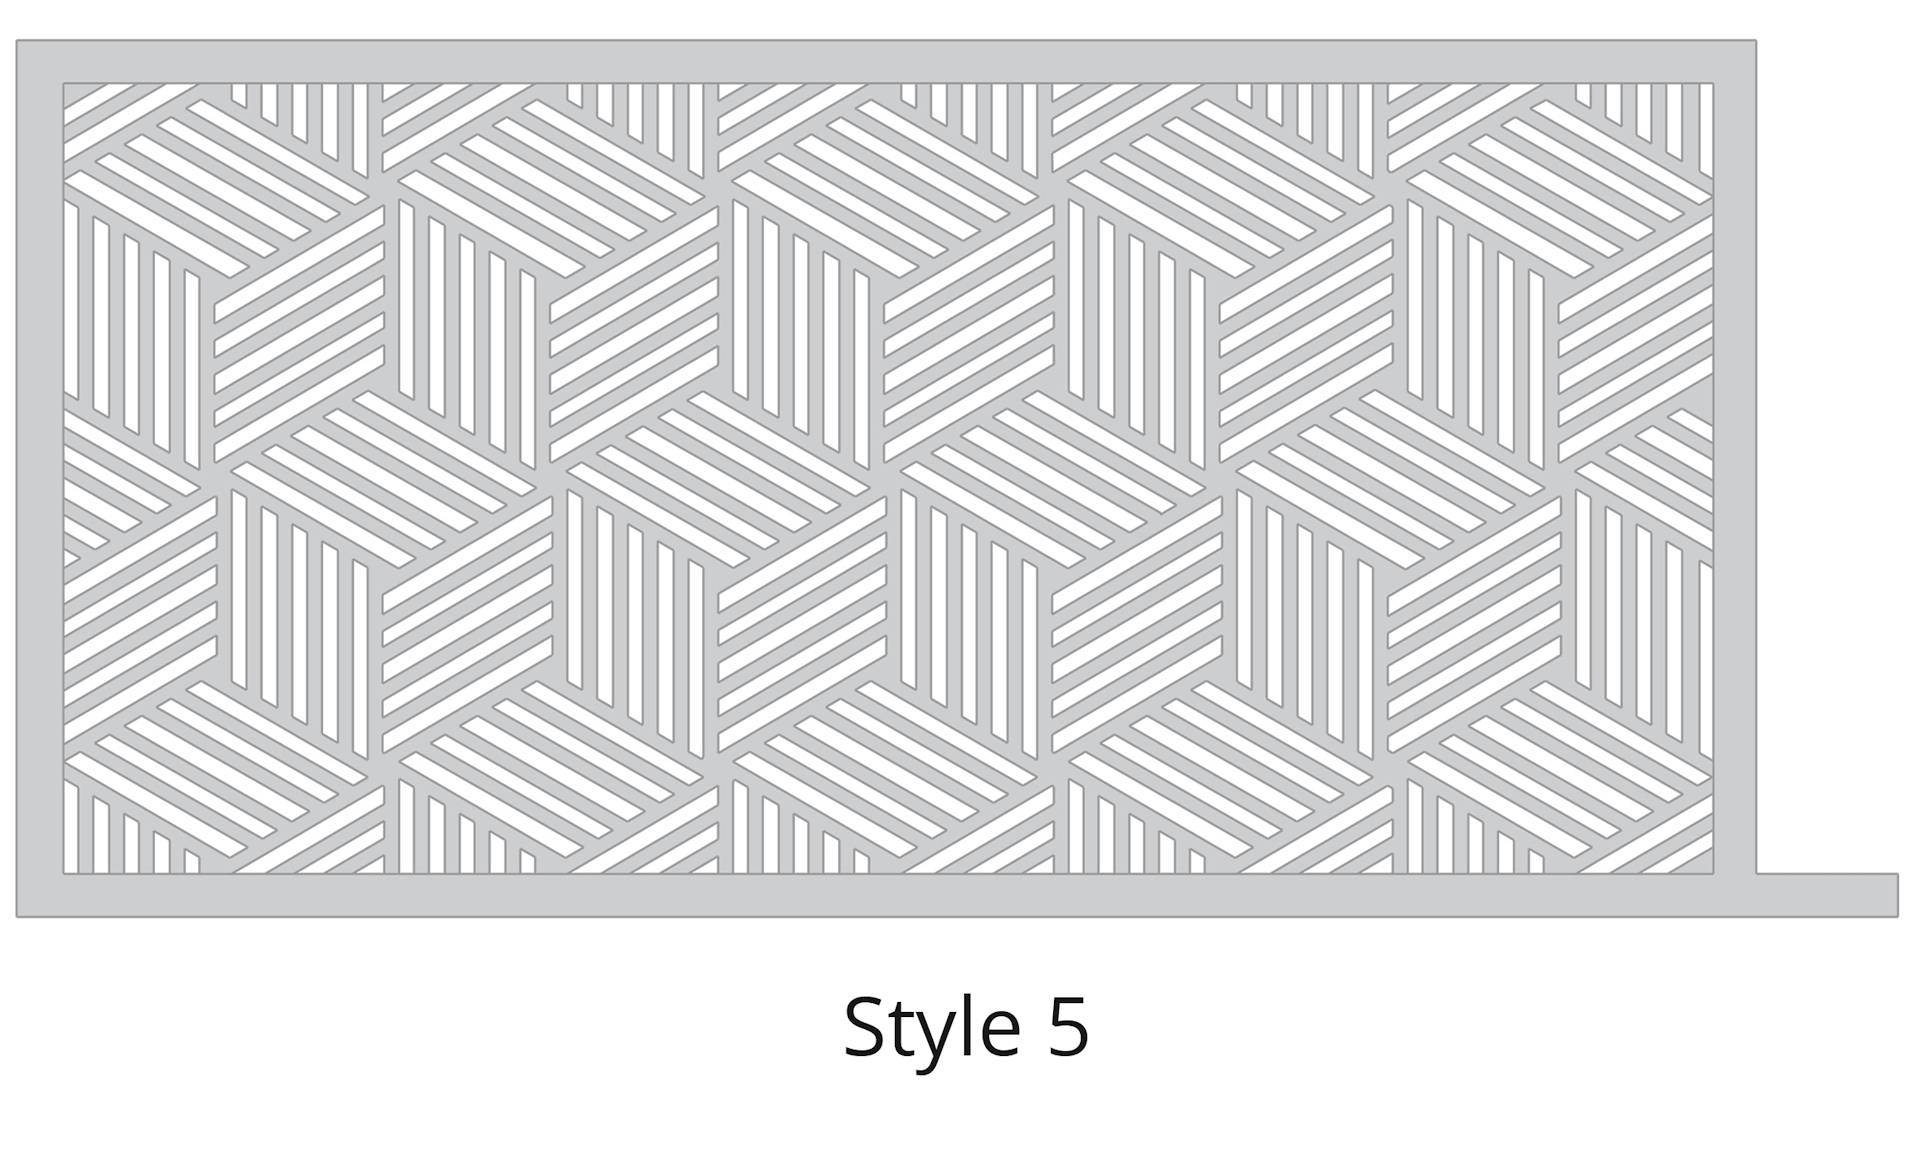 Lazer Cut Gate Design - Style-5-1 Gate